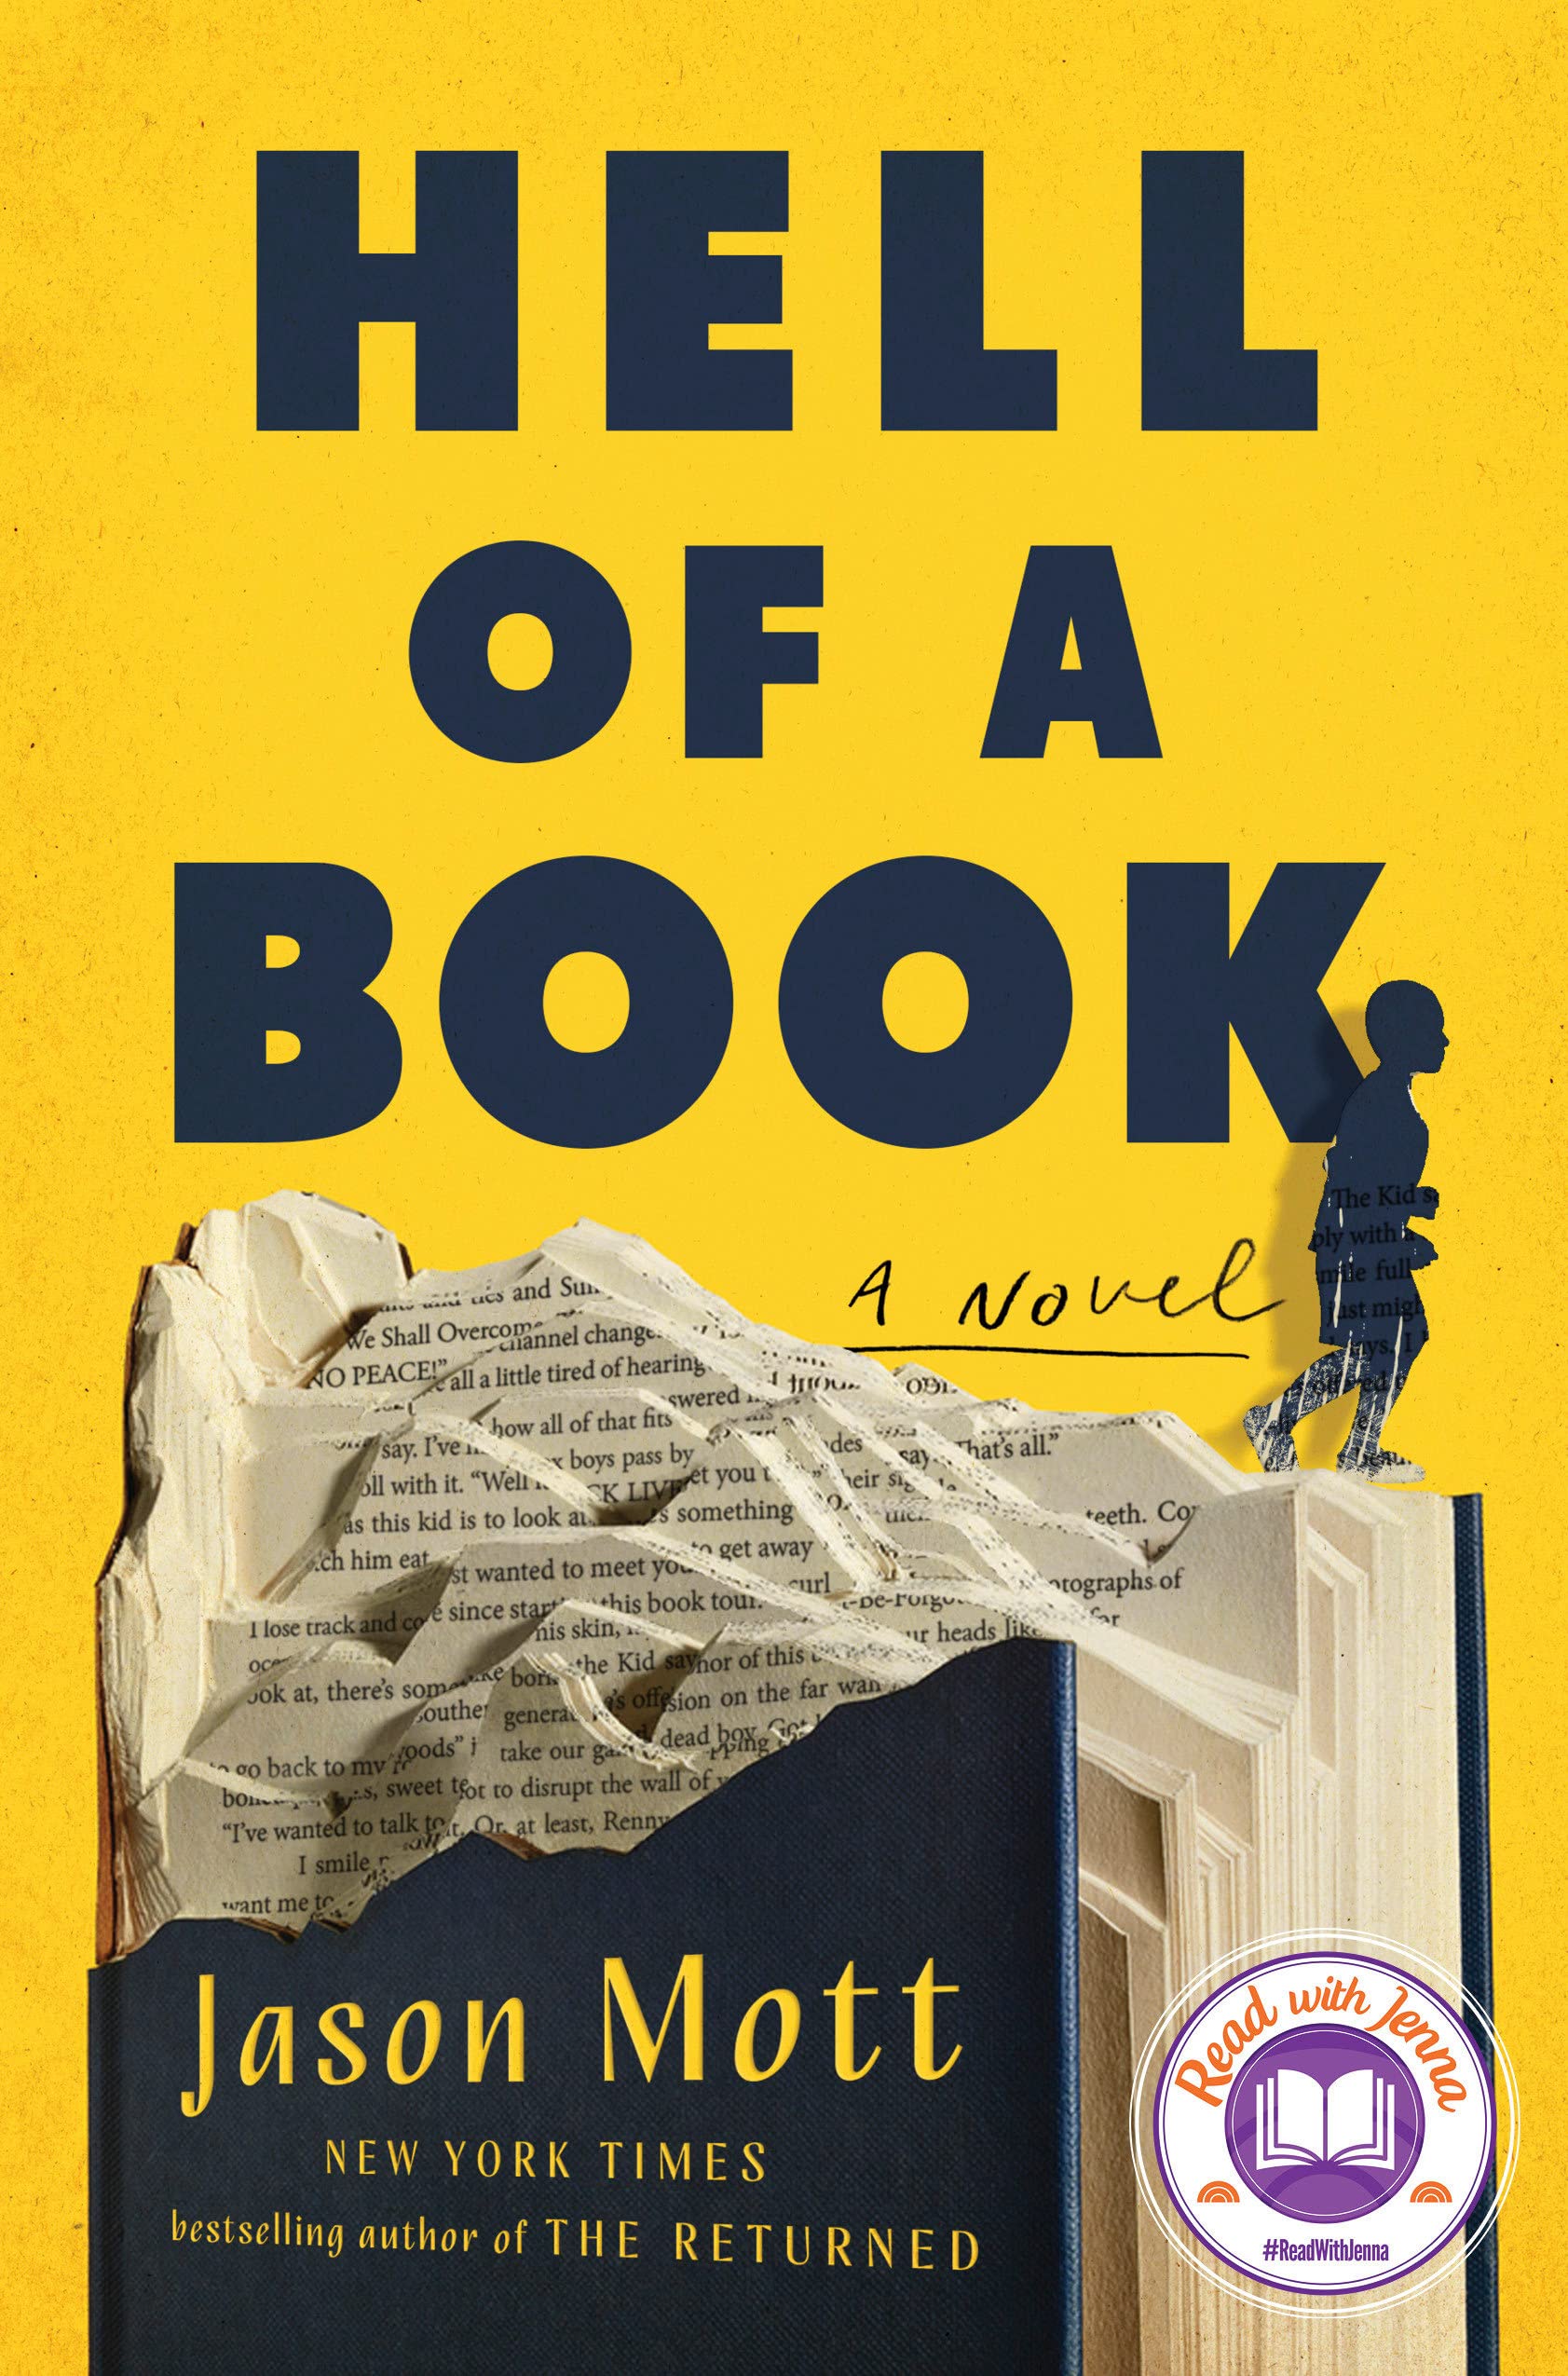 Hell of a Book by Jason Mott